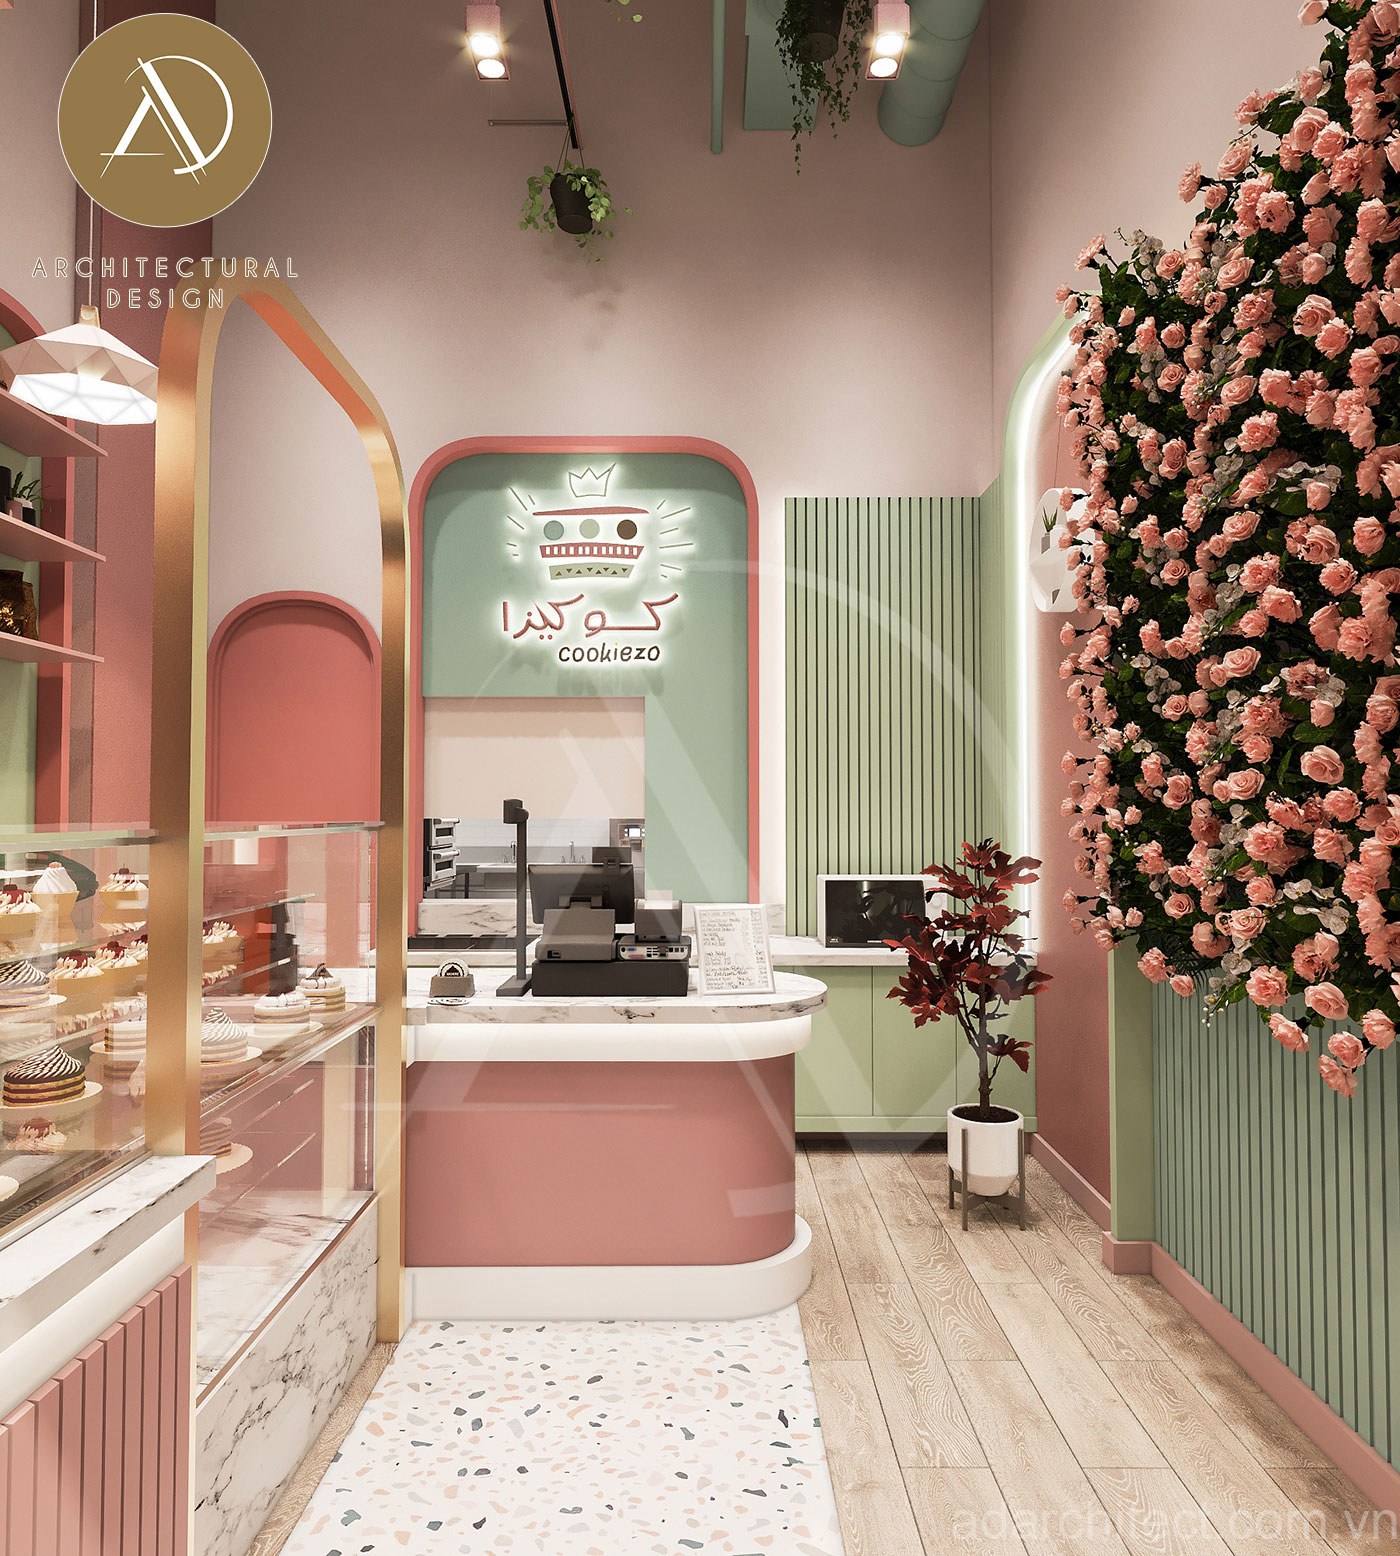 Tiệm bánh đẹp: thiết kế tiệm bánh tông hồng đất